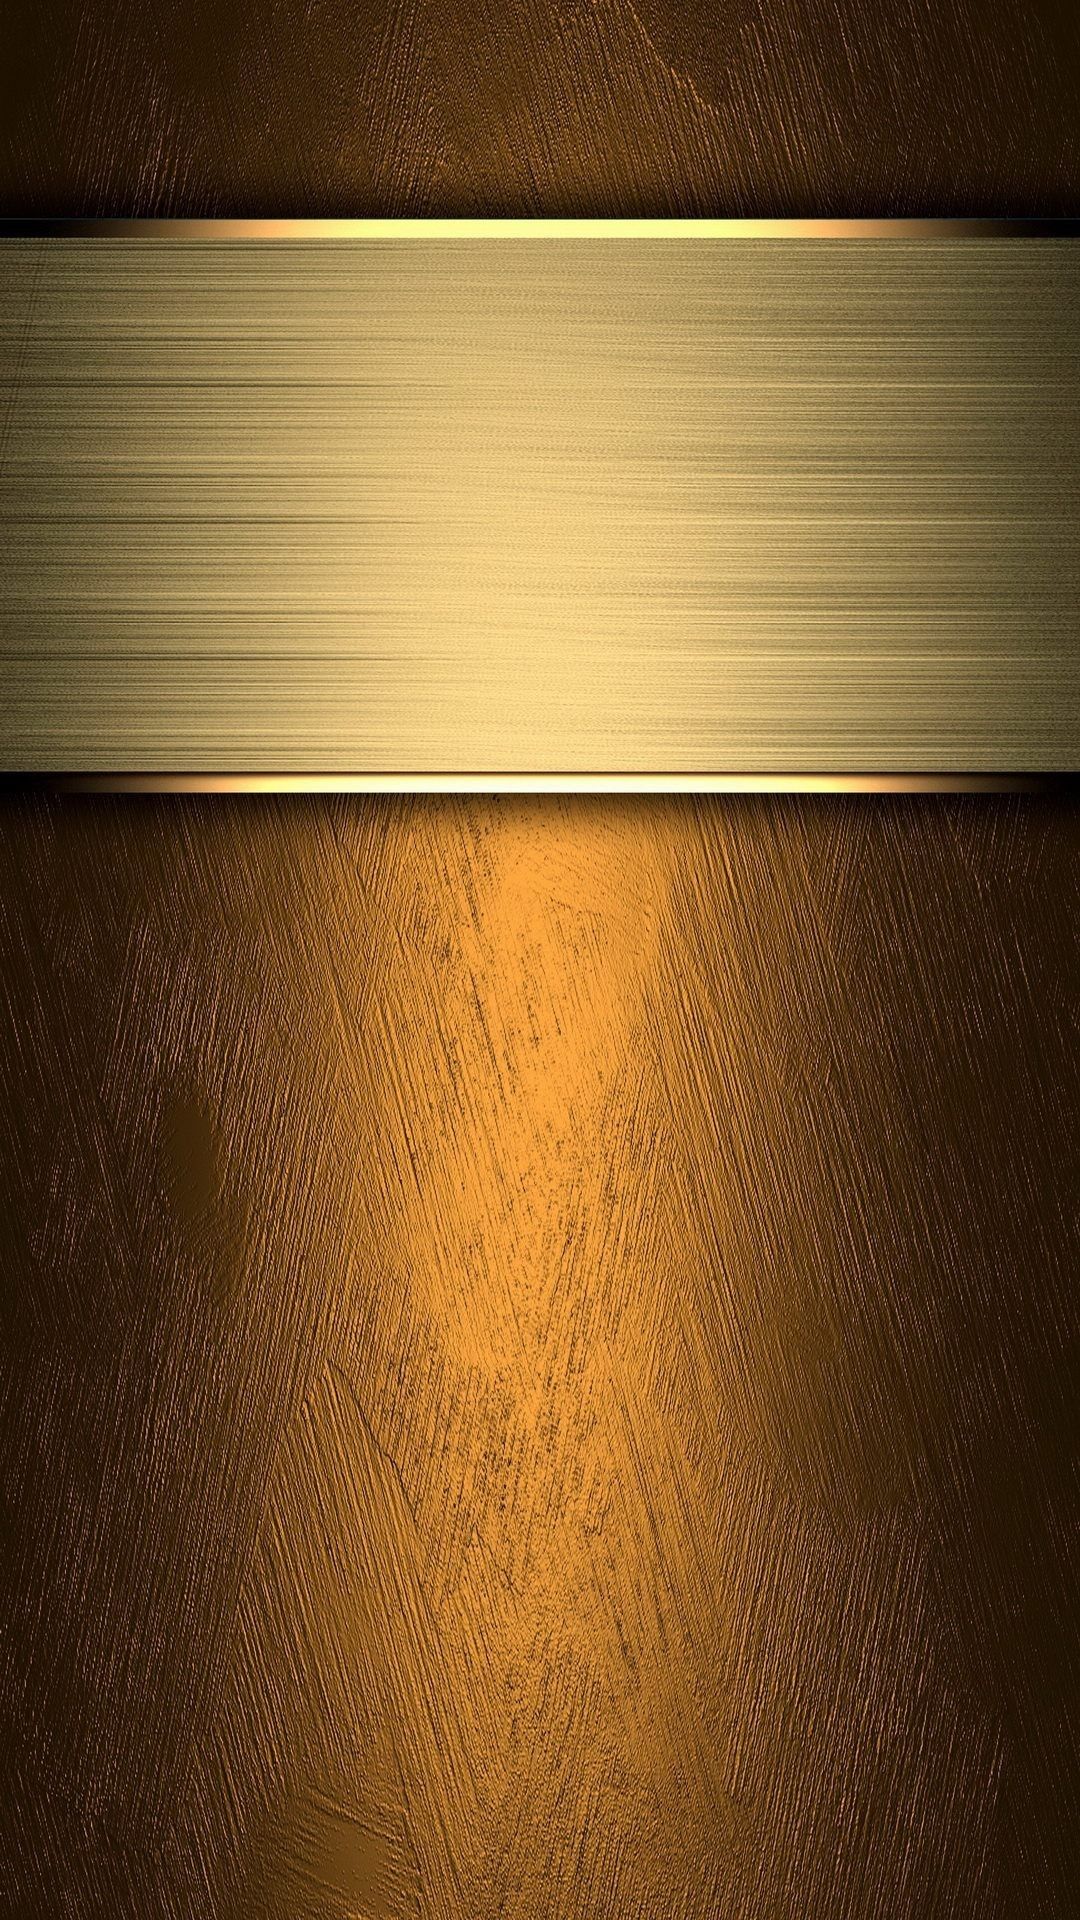 IPhone 6 Gold Wallpaper HD, Desktop Background 750x Image. Gold wallpaper iphone, Golden wallpaper, Gold wallpaper hd